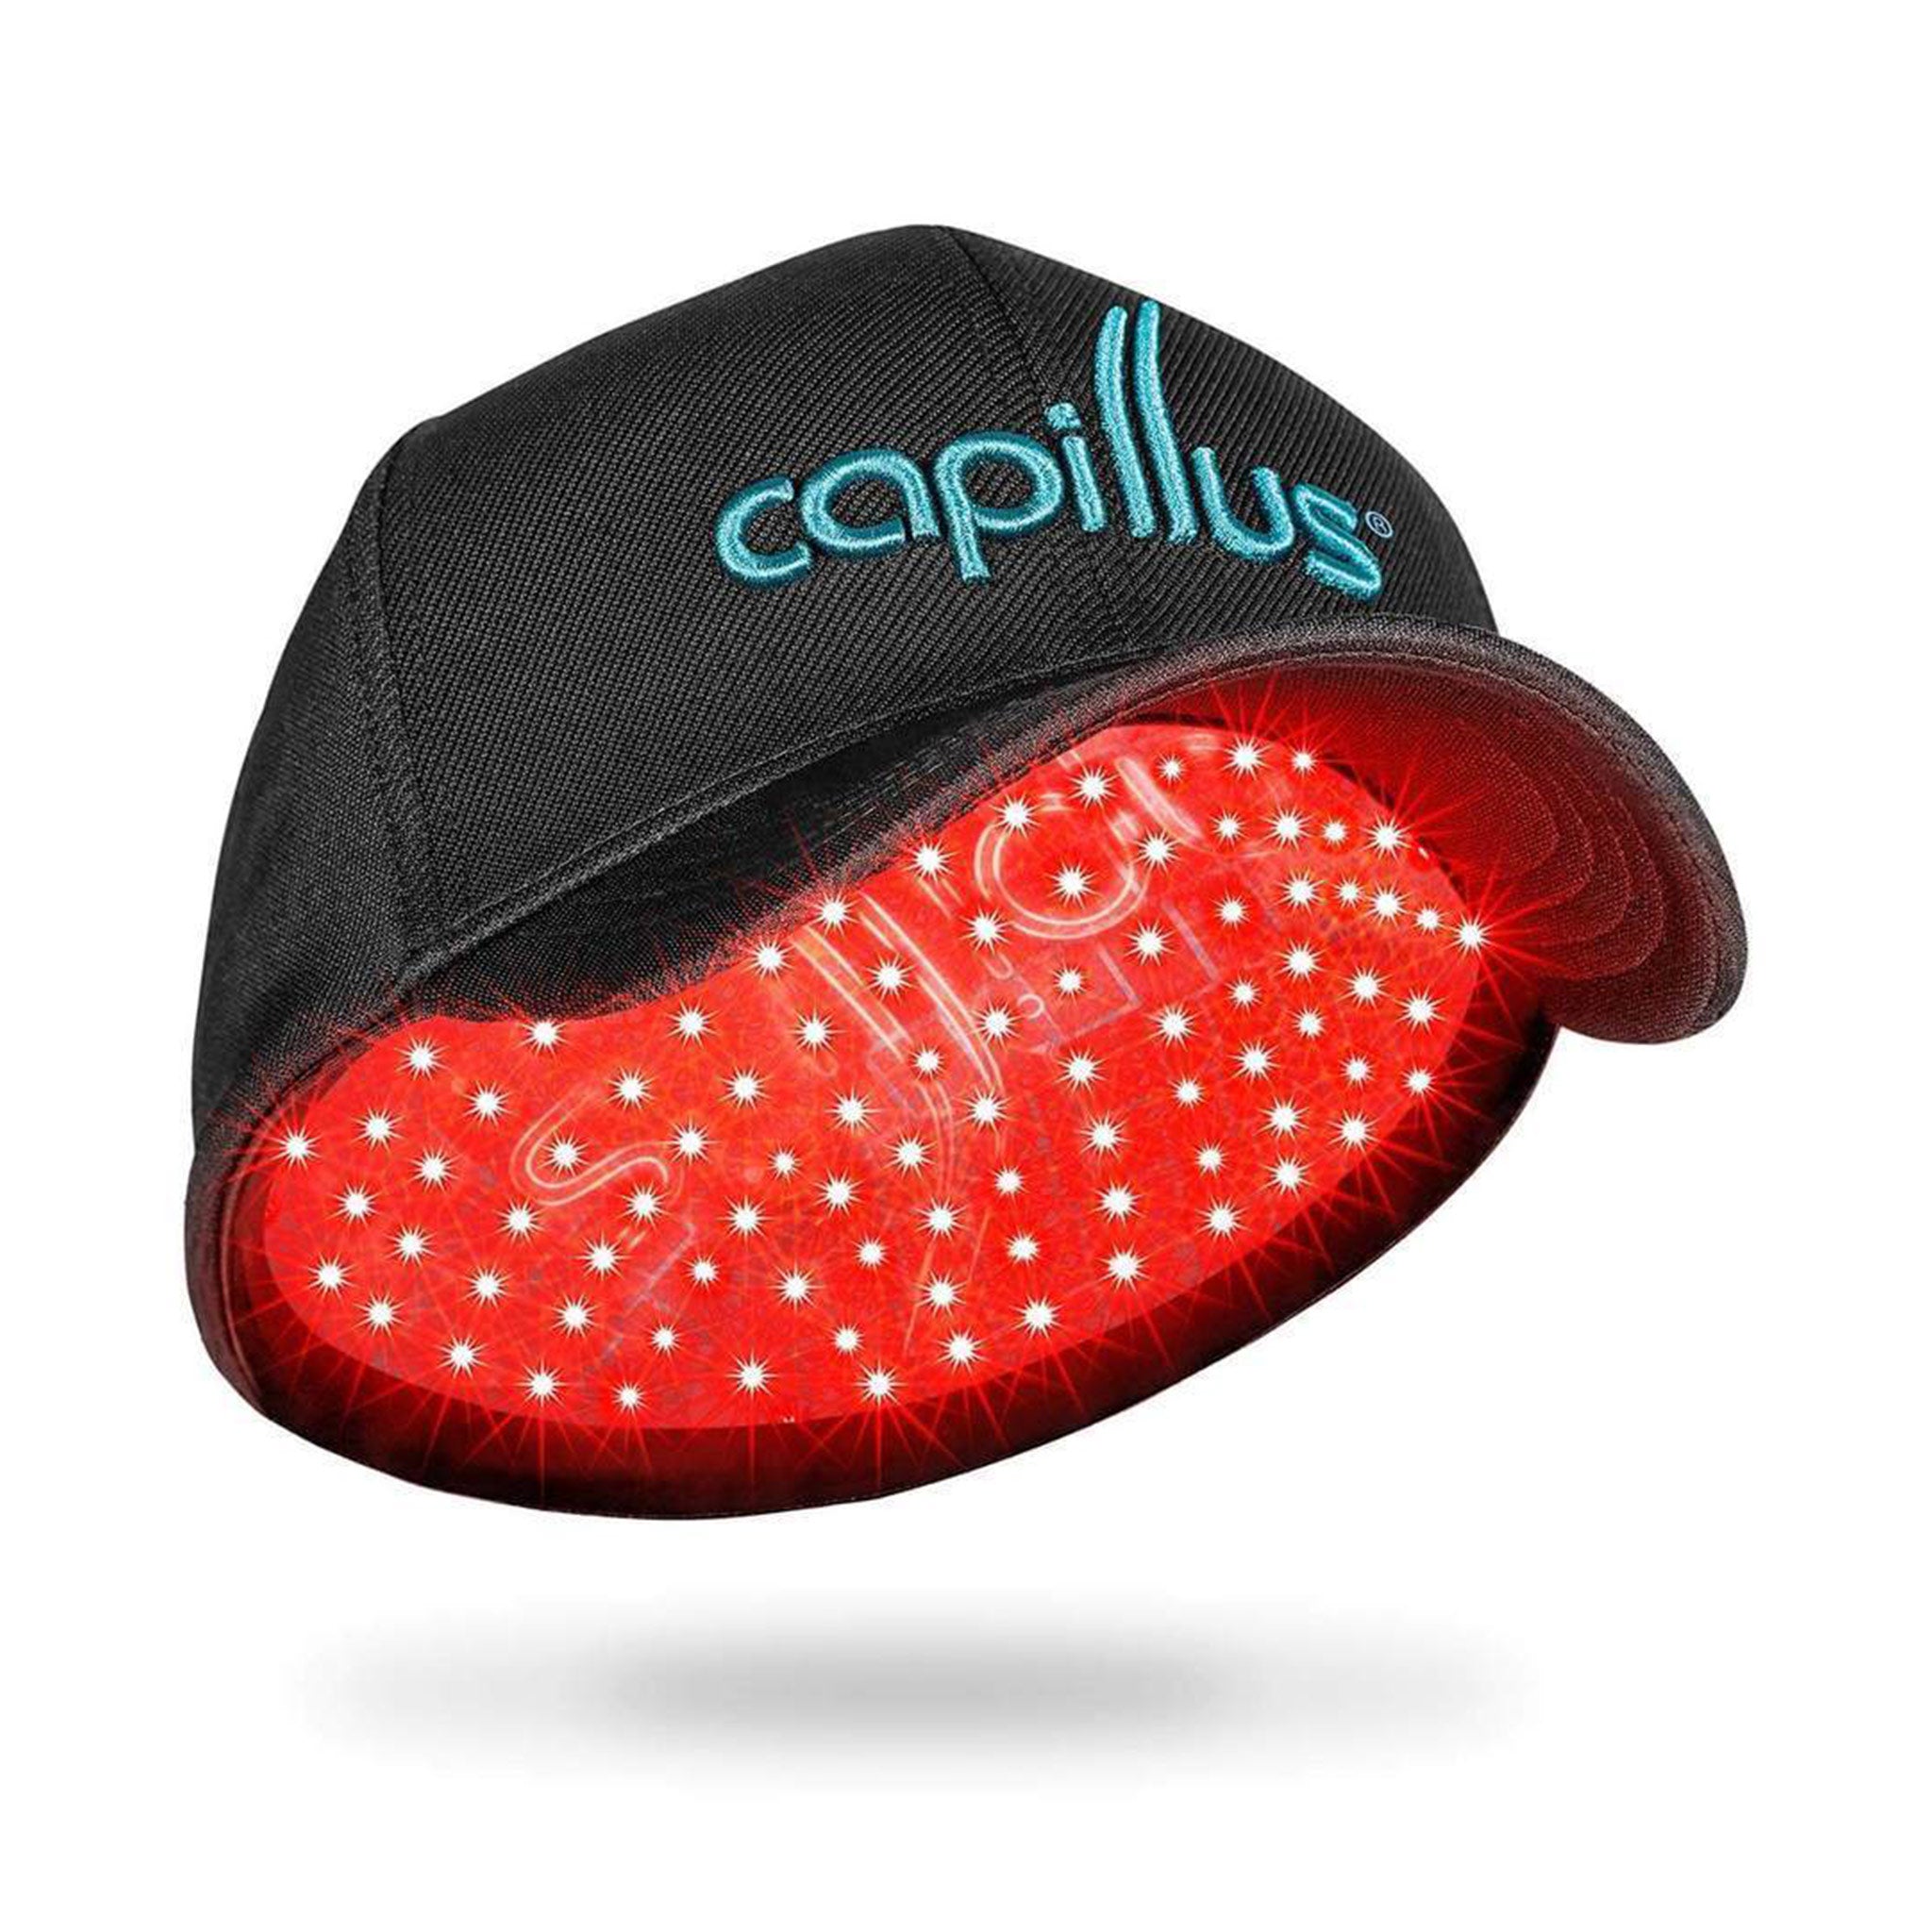 Capillus 202 カピラス-